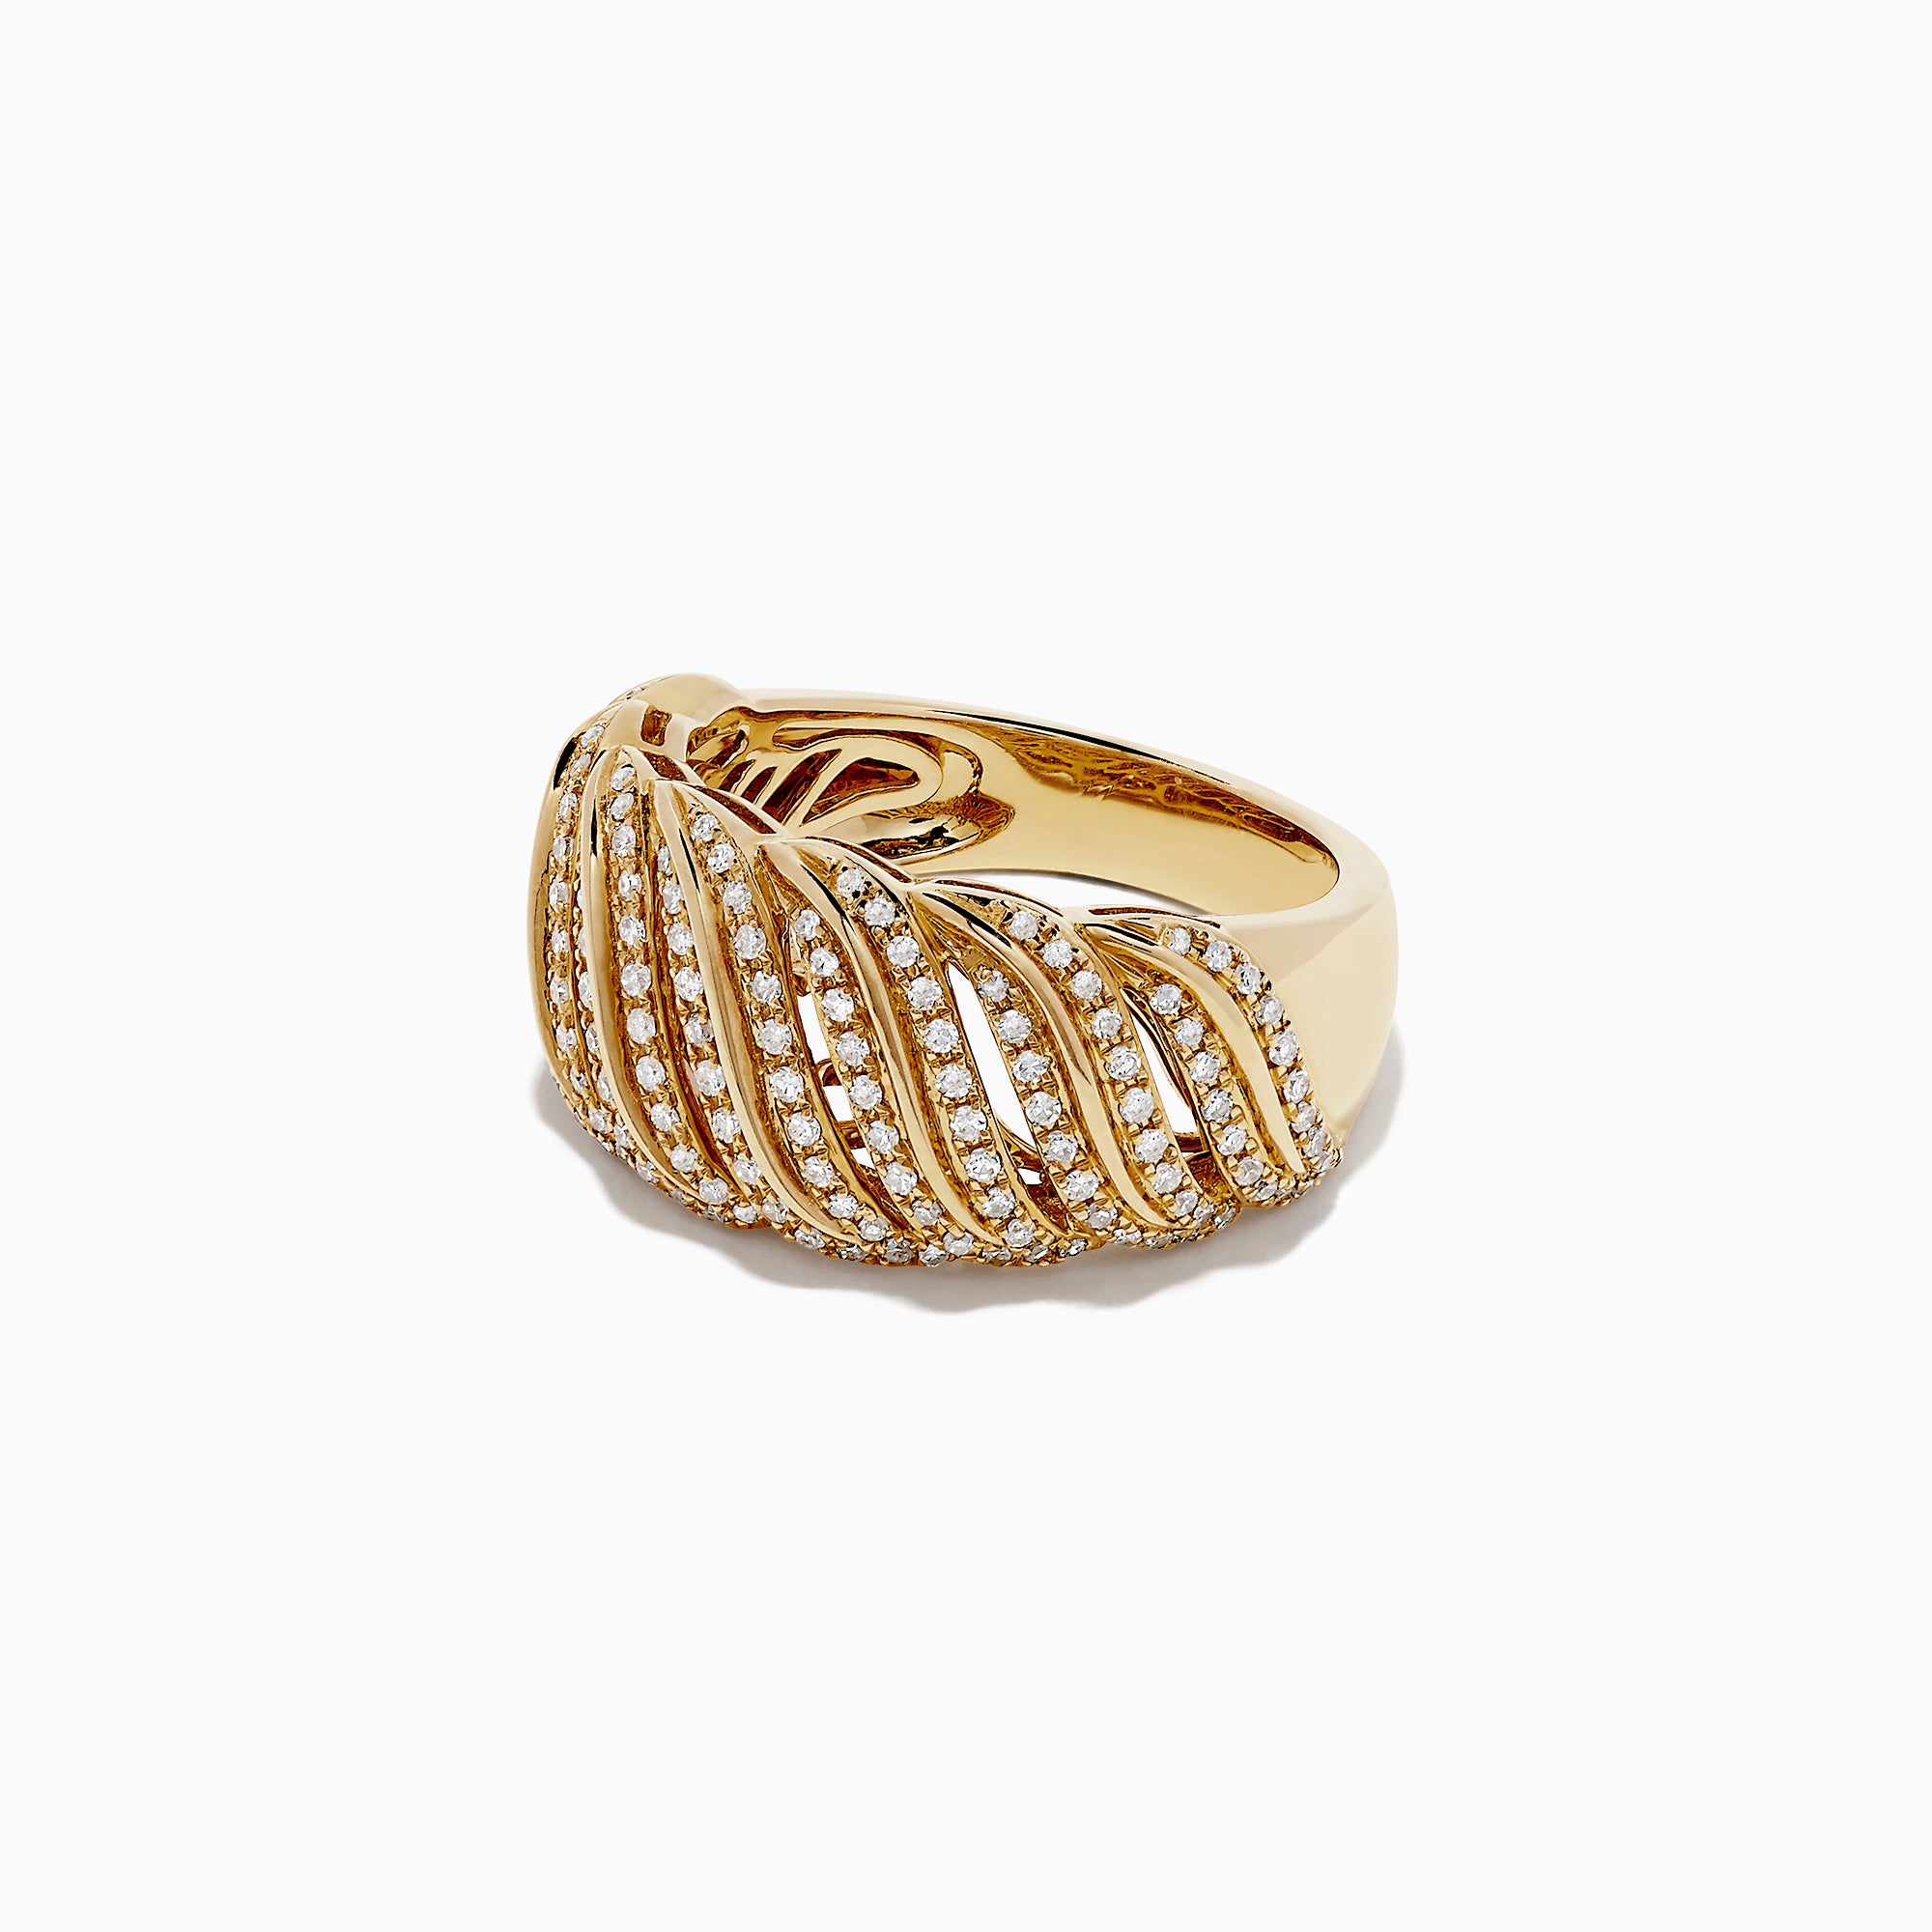 How to Latest Anguthi Ki Design | Female Gold Ring | Gold Ring For Bride |  New Gold Ring | How to Latest Anguthi Ki Design | Female Gold Ring | Gold